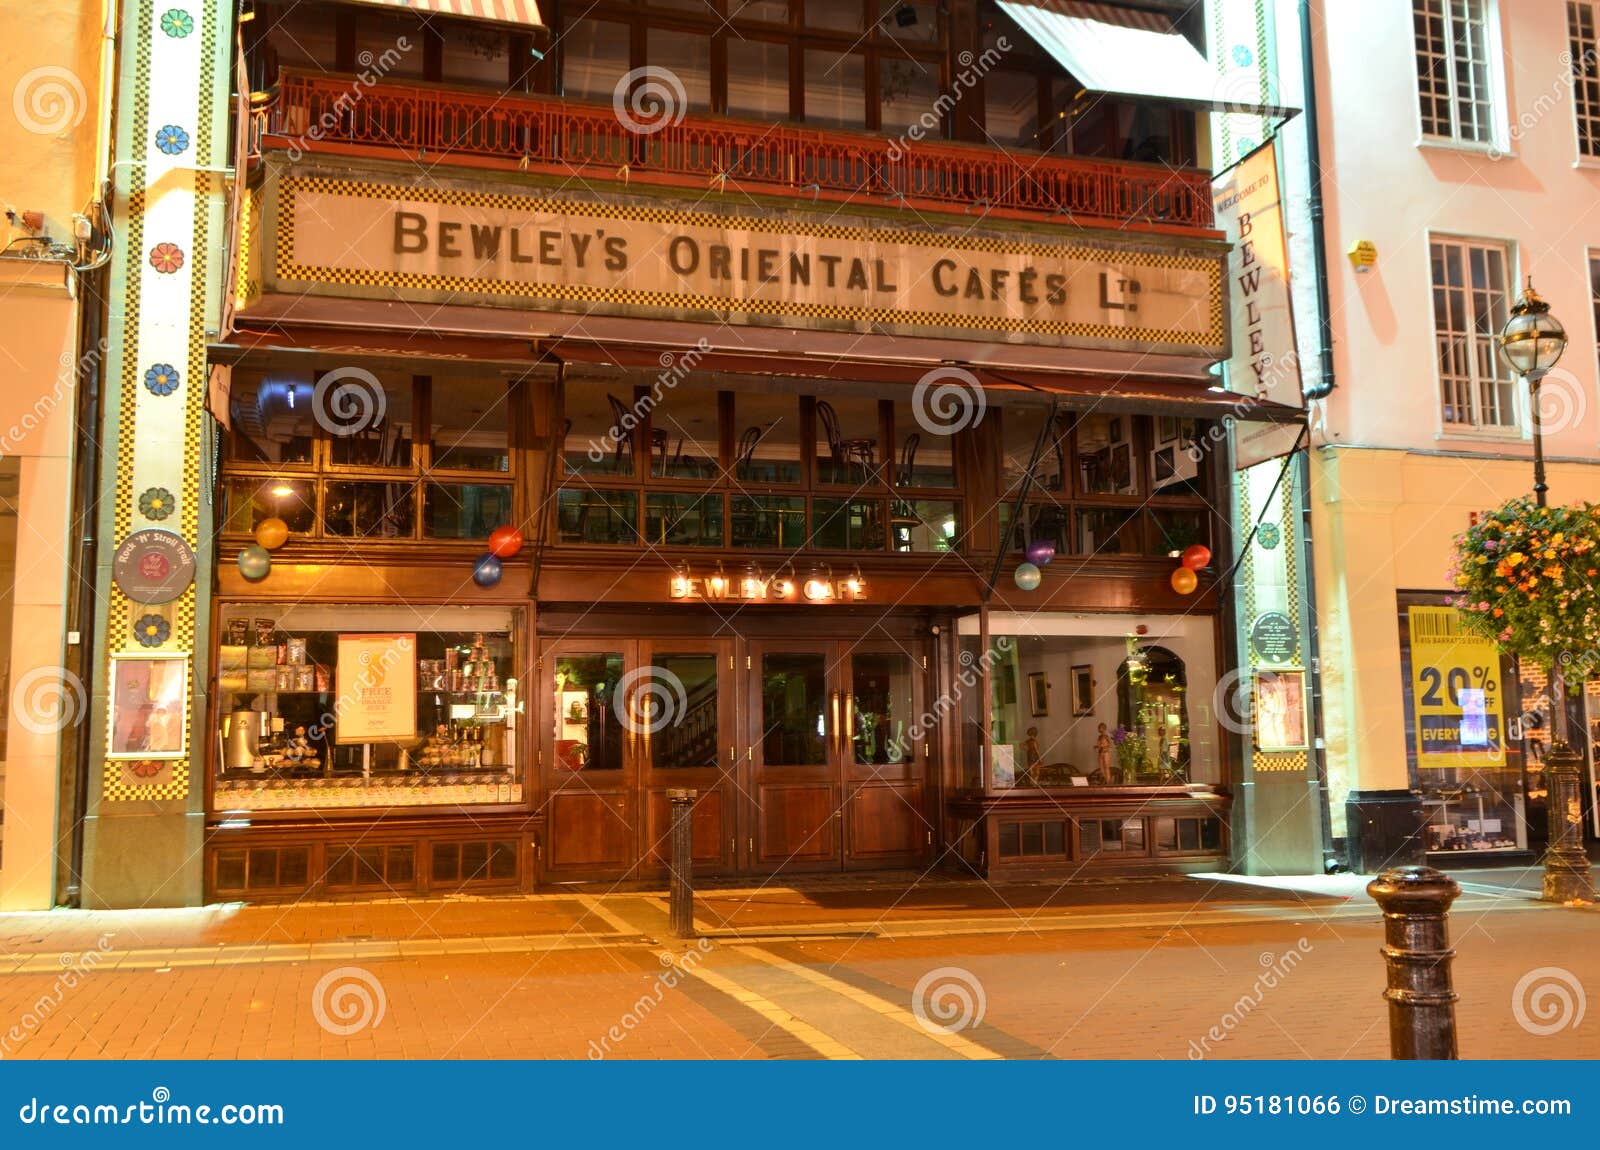 Cafe Oriental